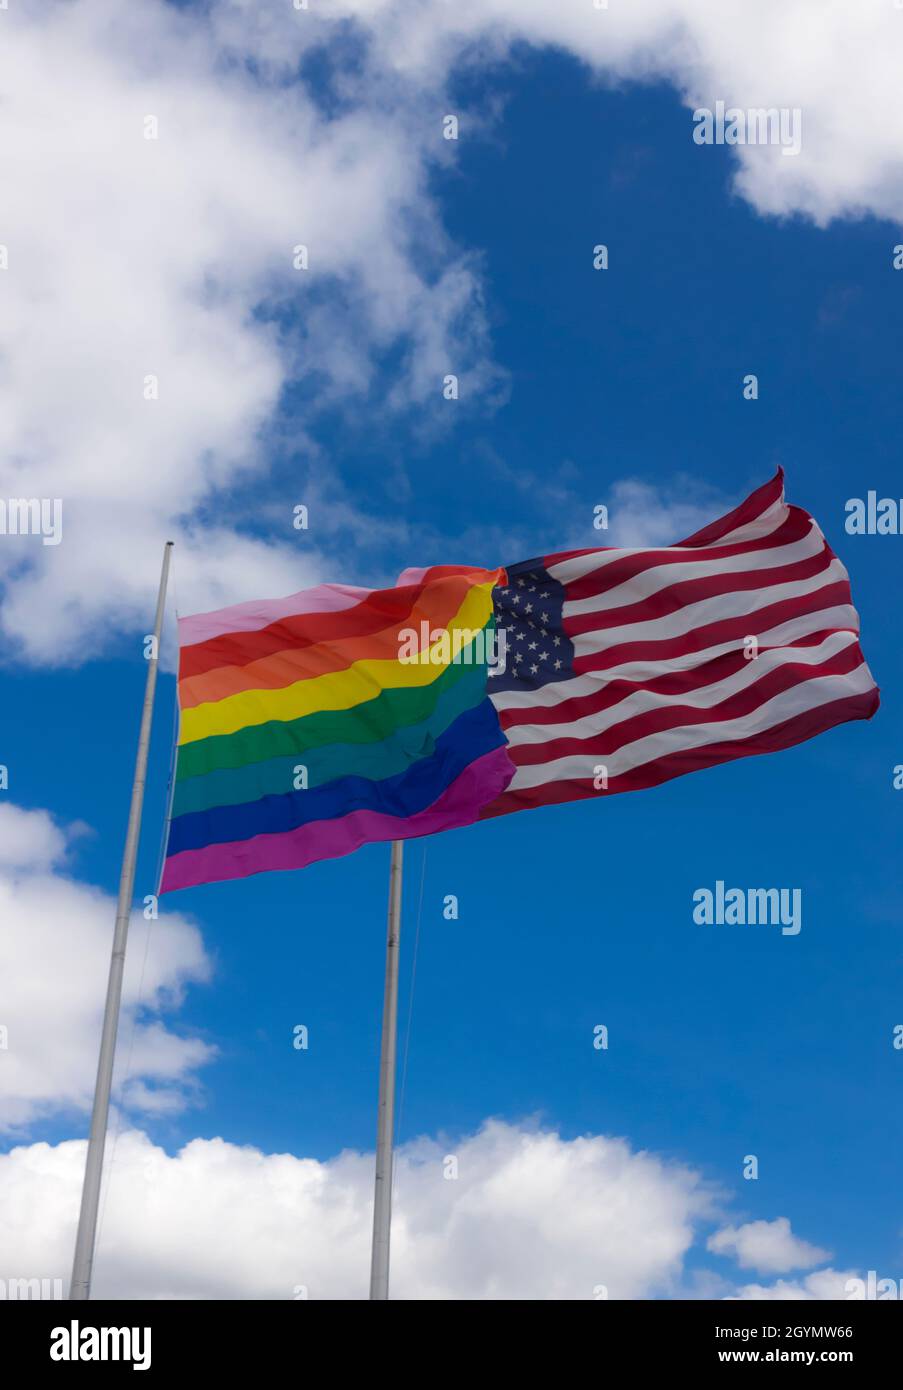 Bandera arco iris/bandera de orgullo gay (LGBT) volando junto a la bandera americana en Cherry Grove, Fire Island, Nueva York, Estados Unidos de América. Foto de stock